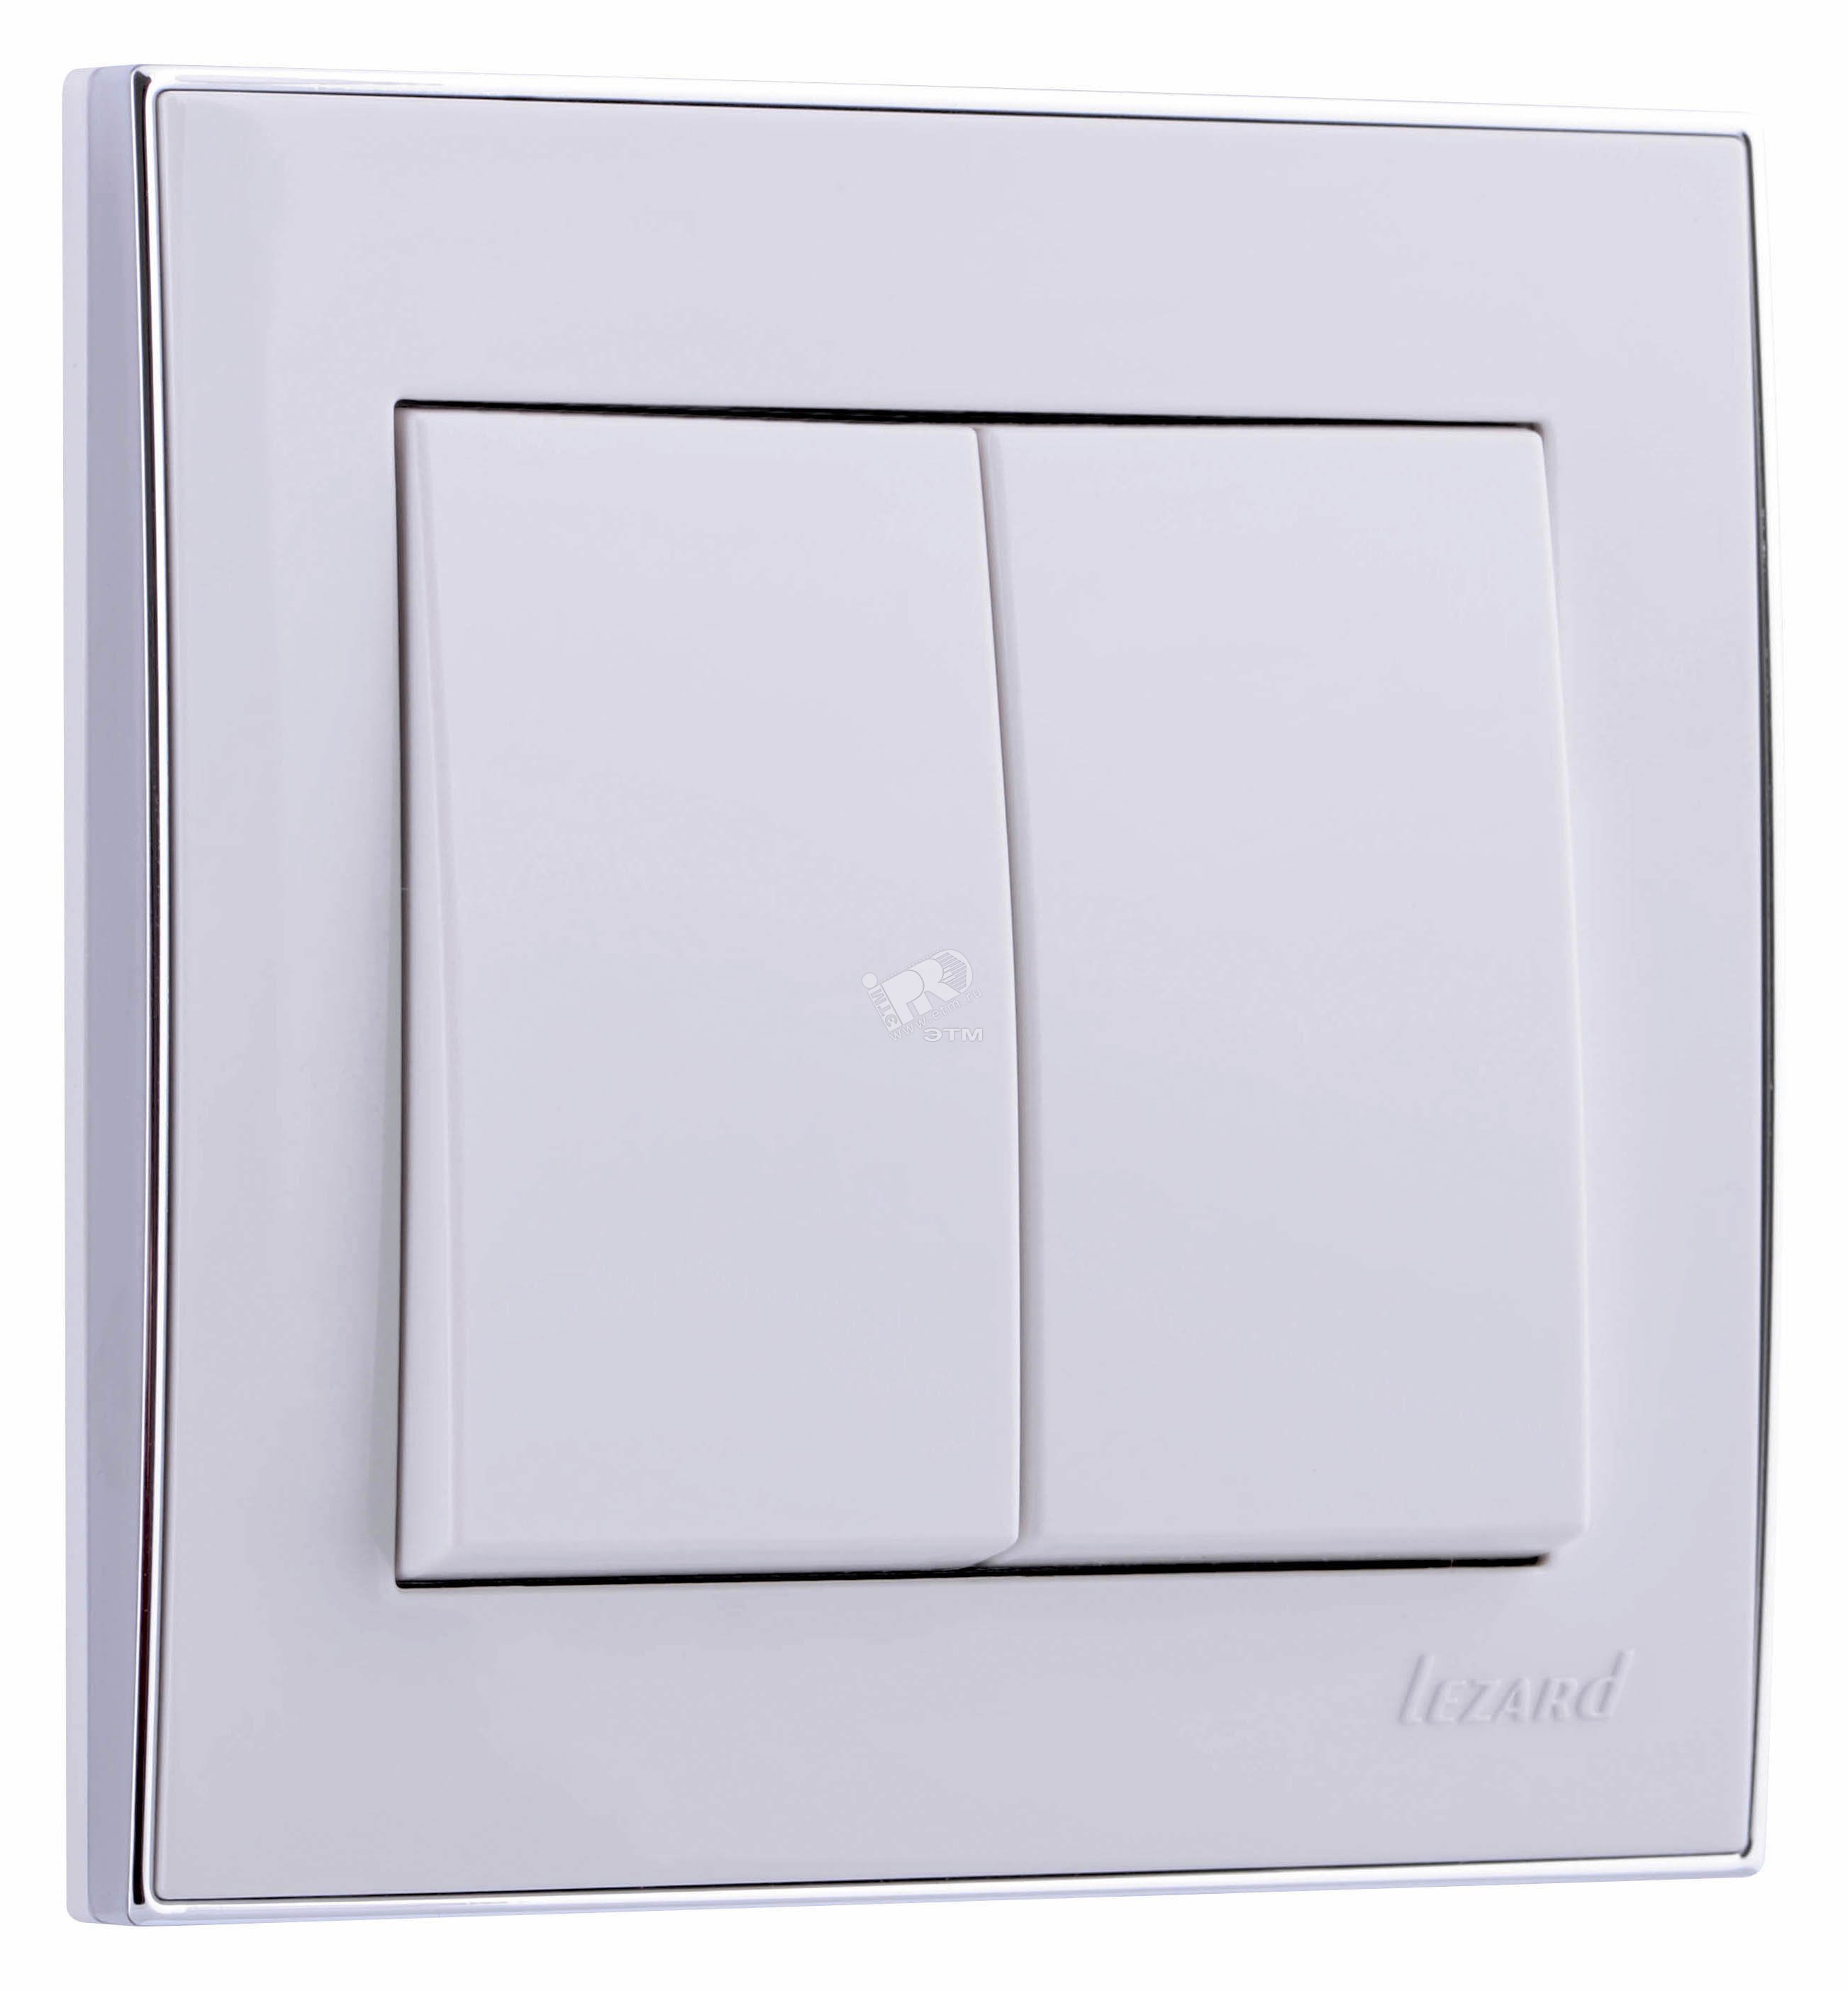 RAIN Выключатель 2-ой белый с боковой вставкой хром 703-0225-101 Lezard